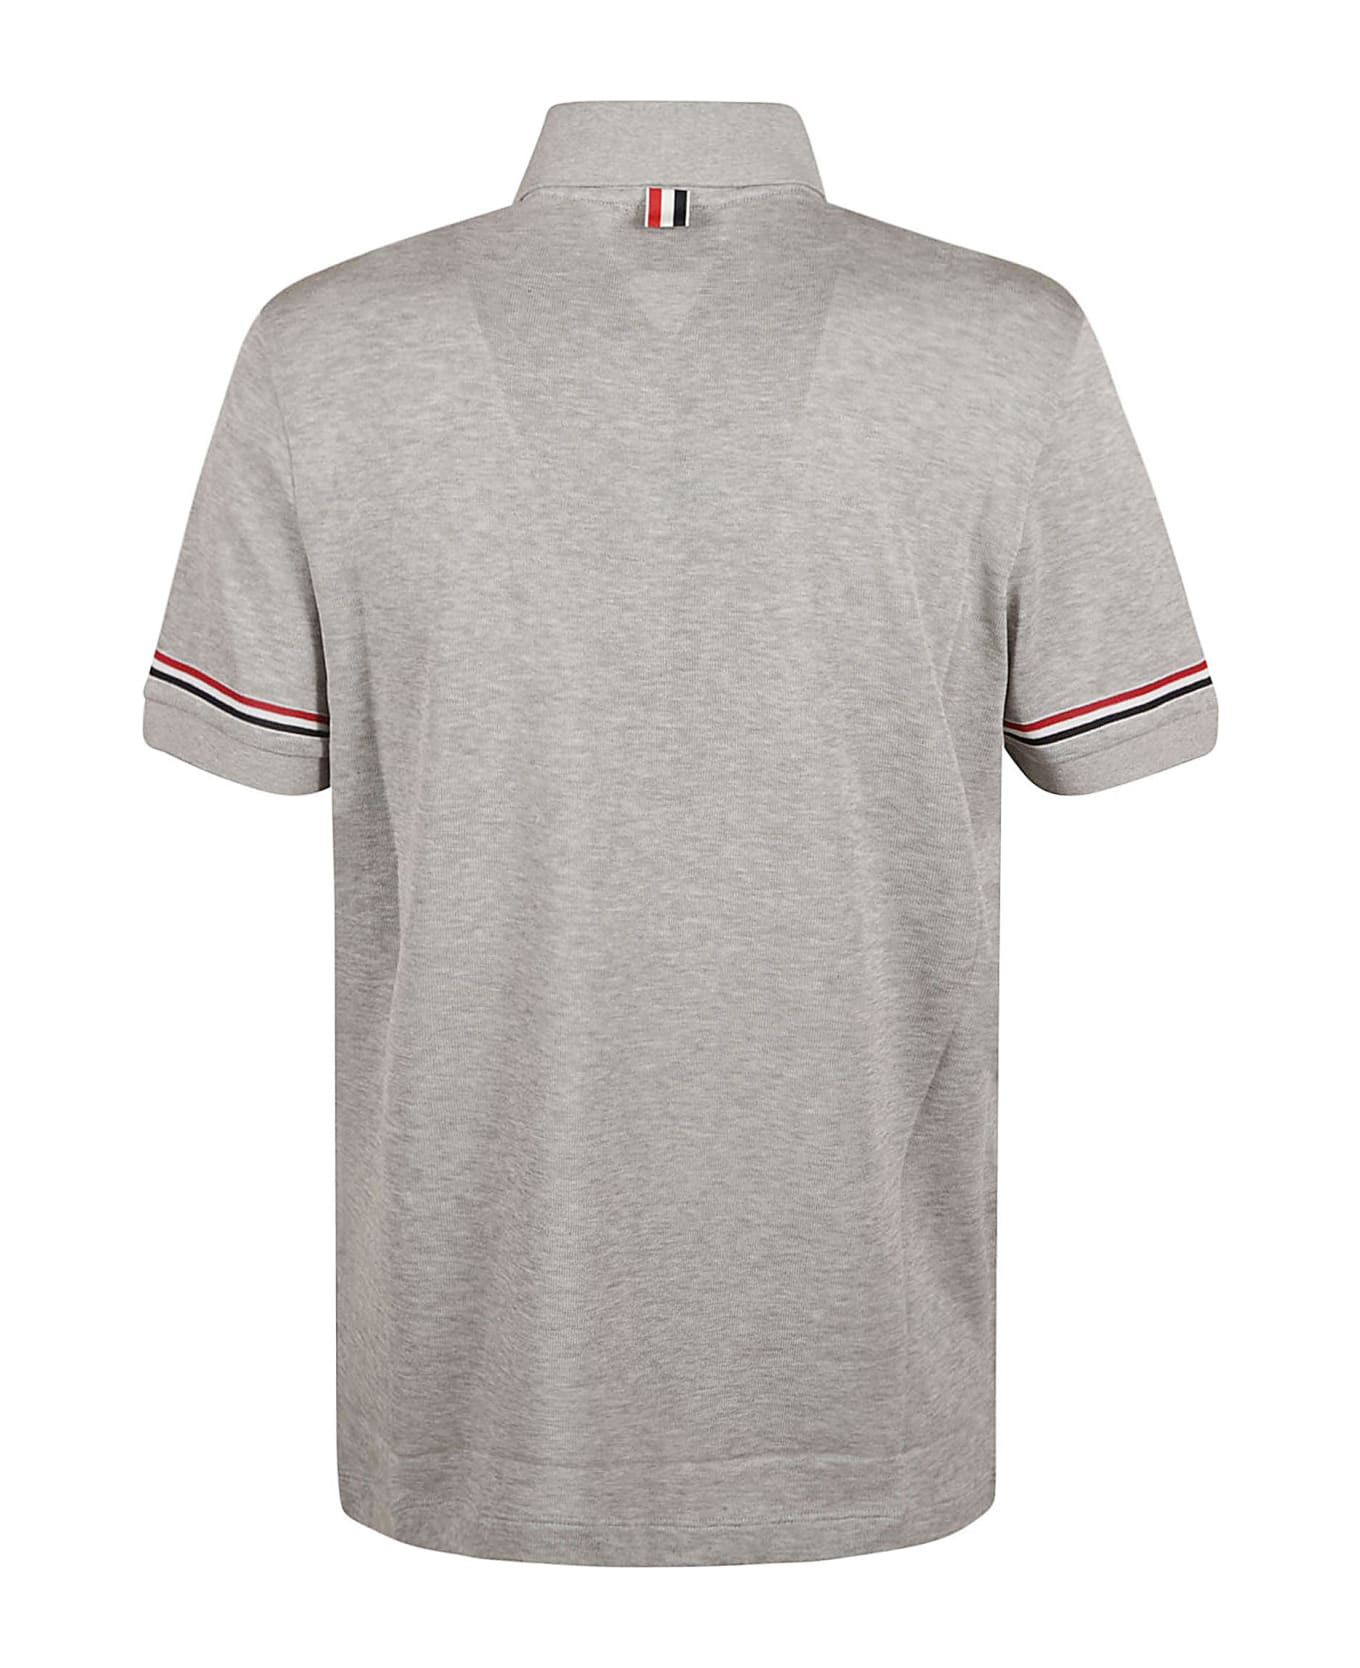 Thom Browne Rwb Polo Shirt - Medium Grey シャツ